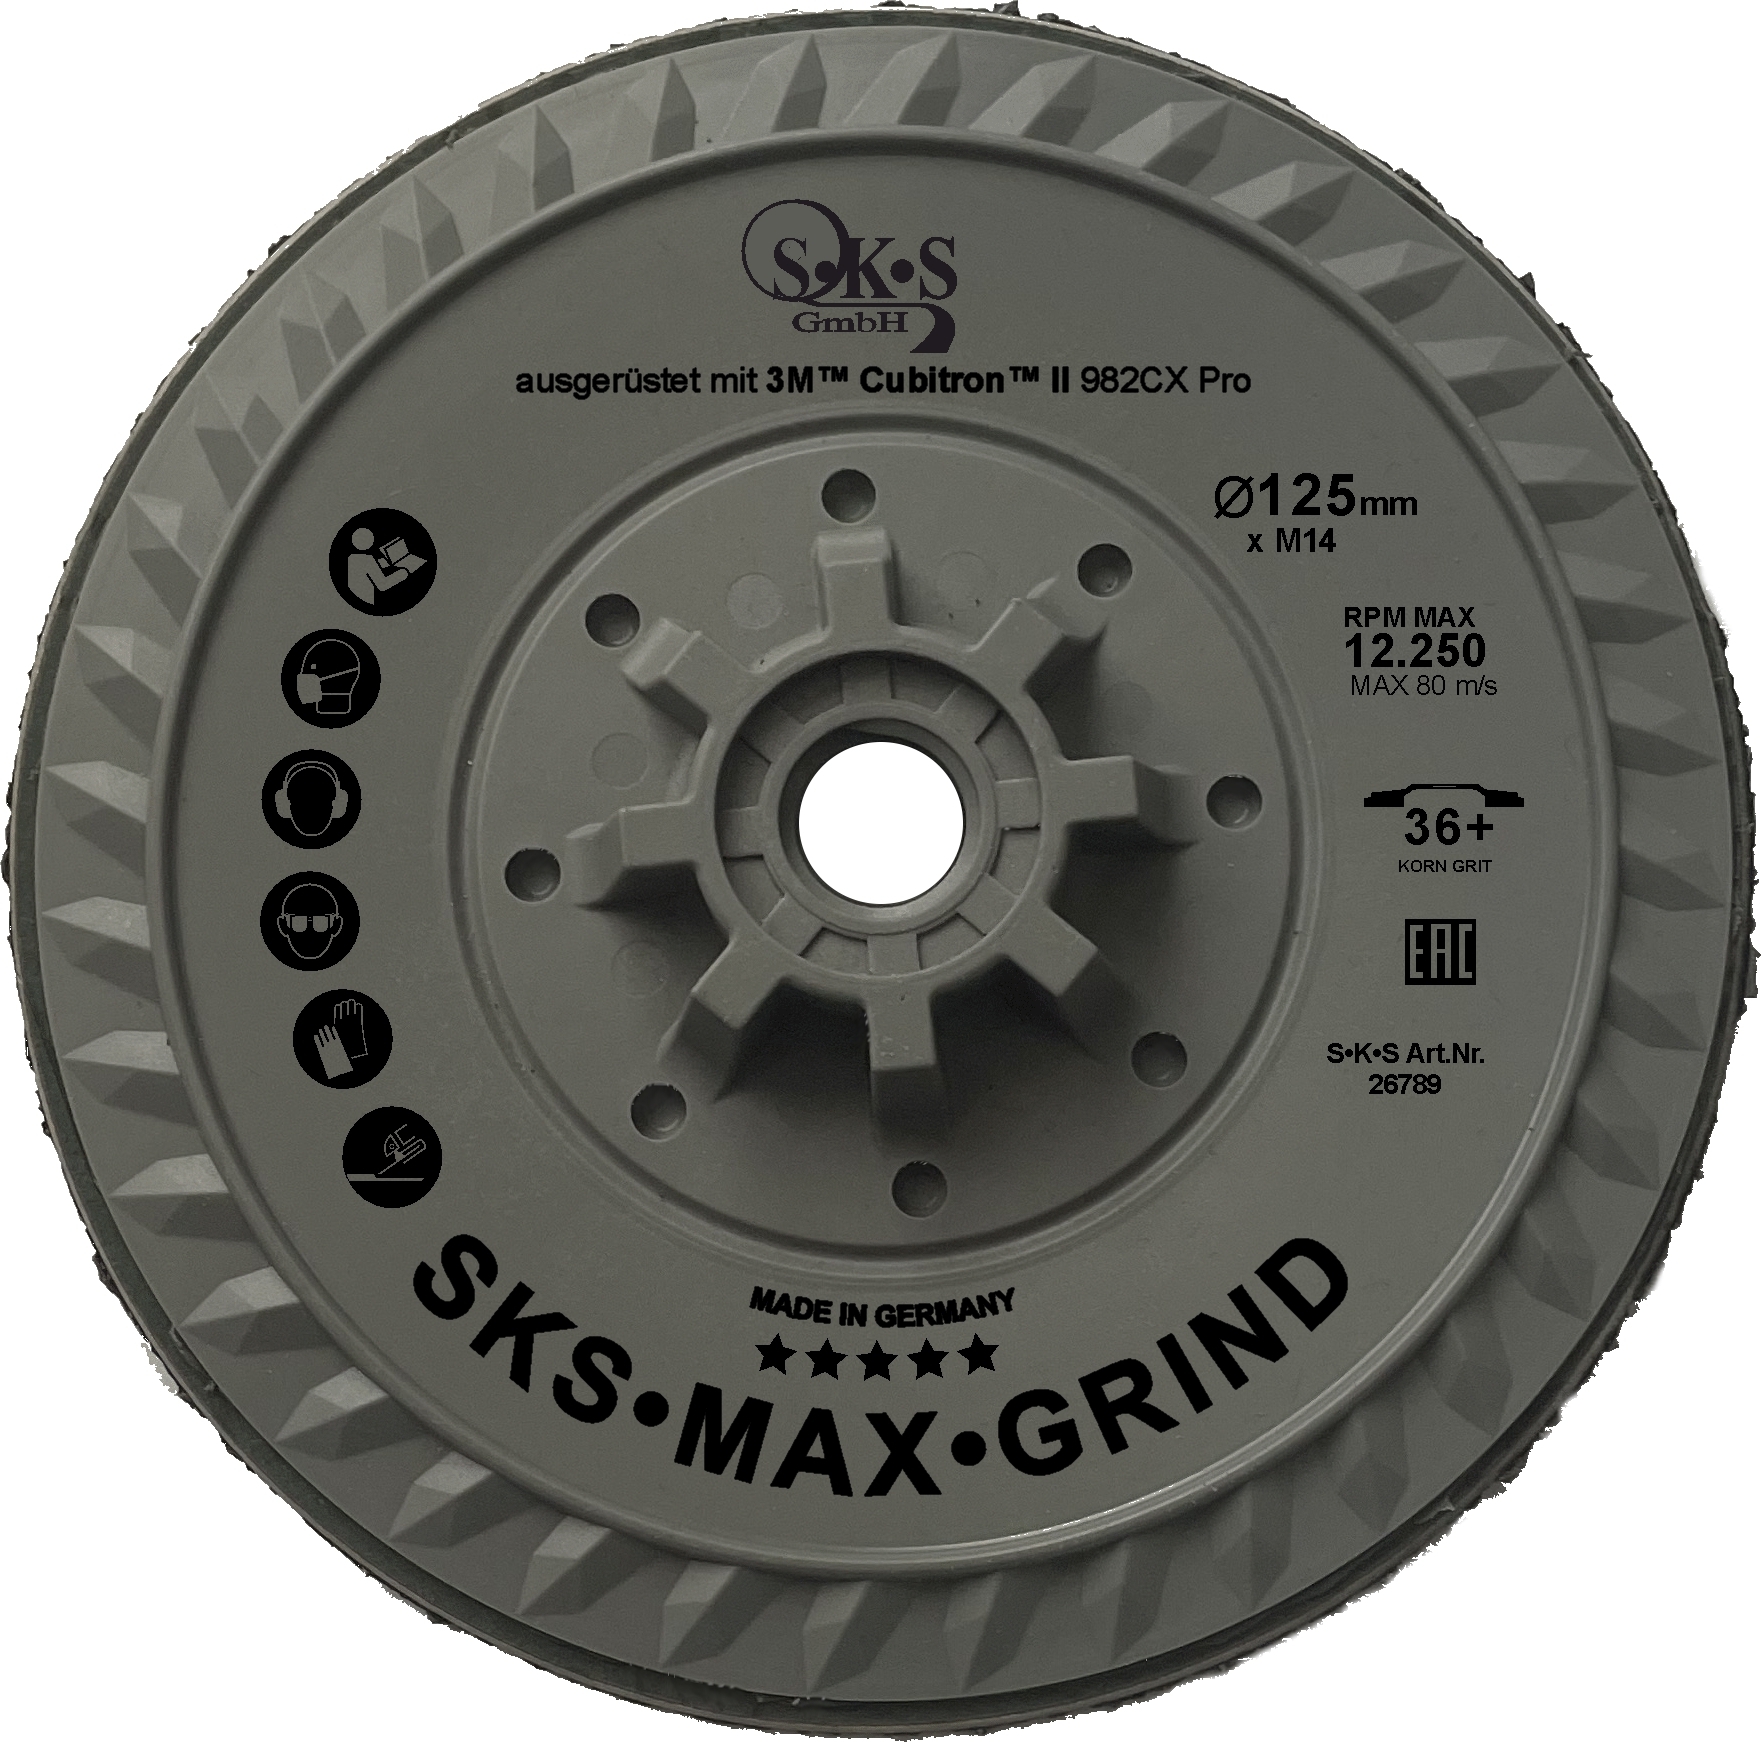 S-K-S Max Grind, 3M Cubitron II vezelschijf 982CX Pro, 125 mm, korrelgrootte 36 , met M14 schroefdraadbevestiging